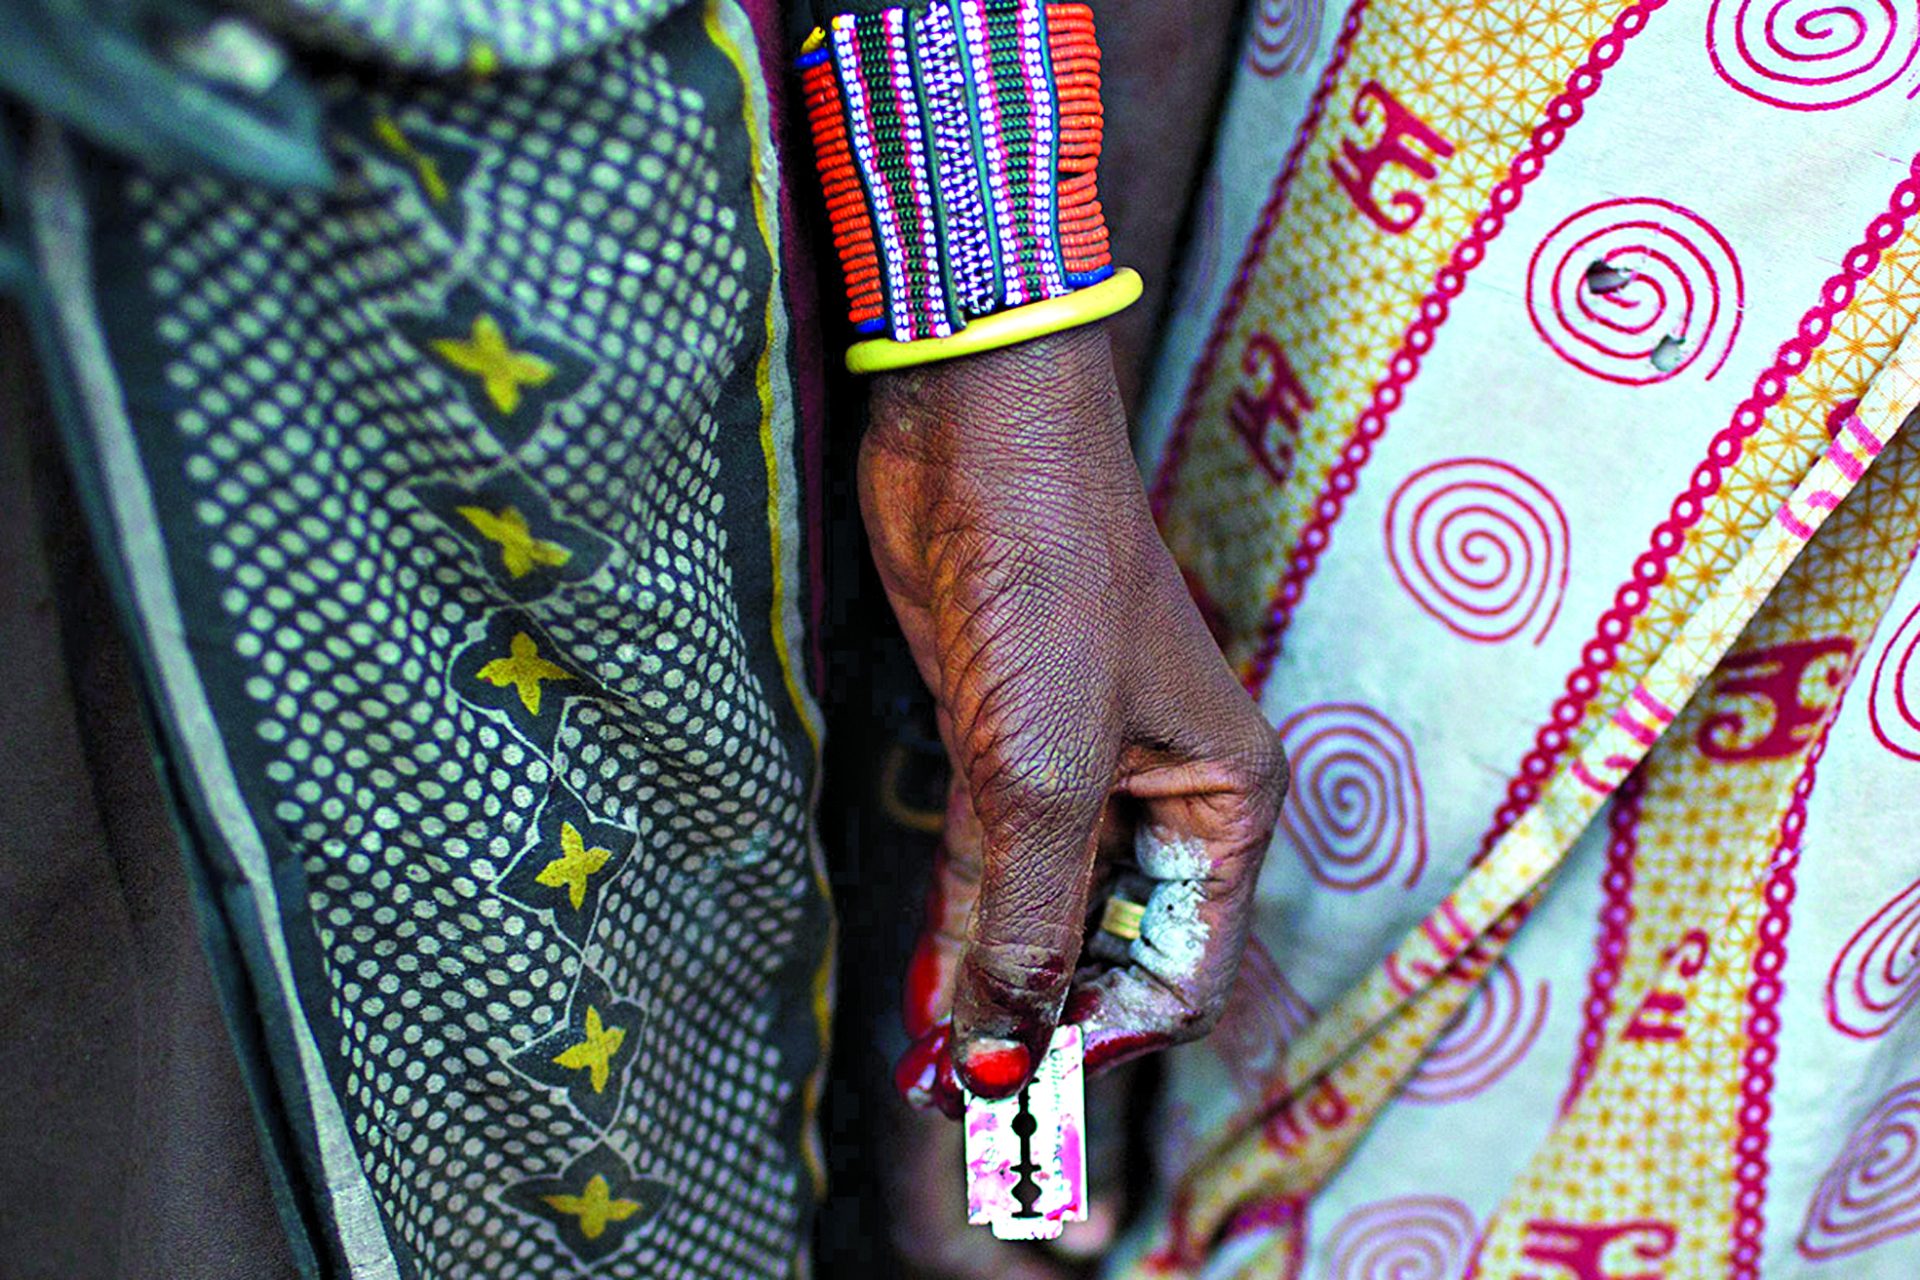 Hospitais registam 43 casos de mutilação genital feminina